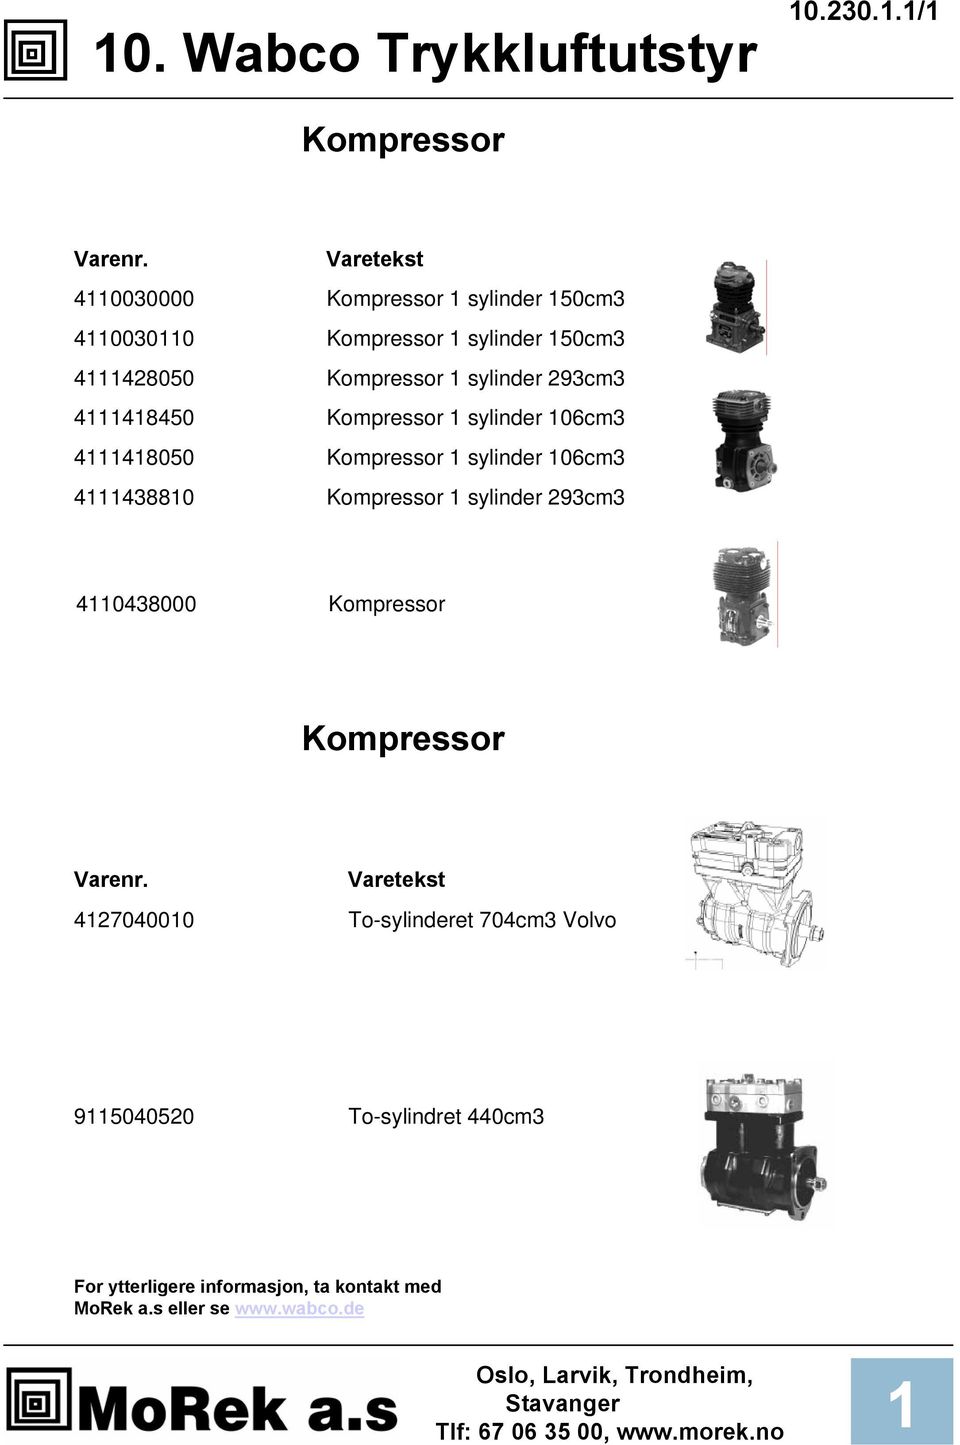 Kompressor sylinder 293cm3 448450 Kompressor sylinder 06cm3 448050 Kompressor